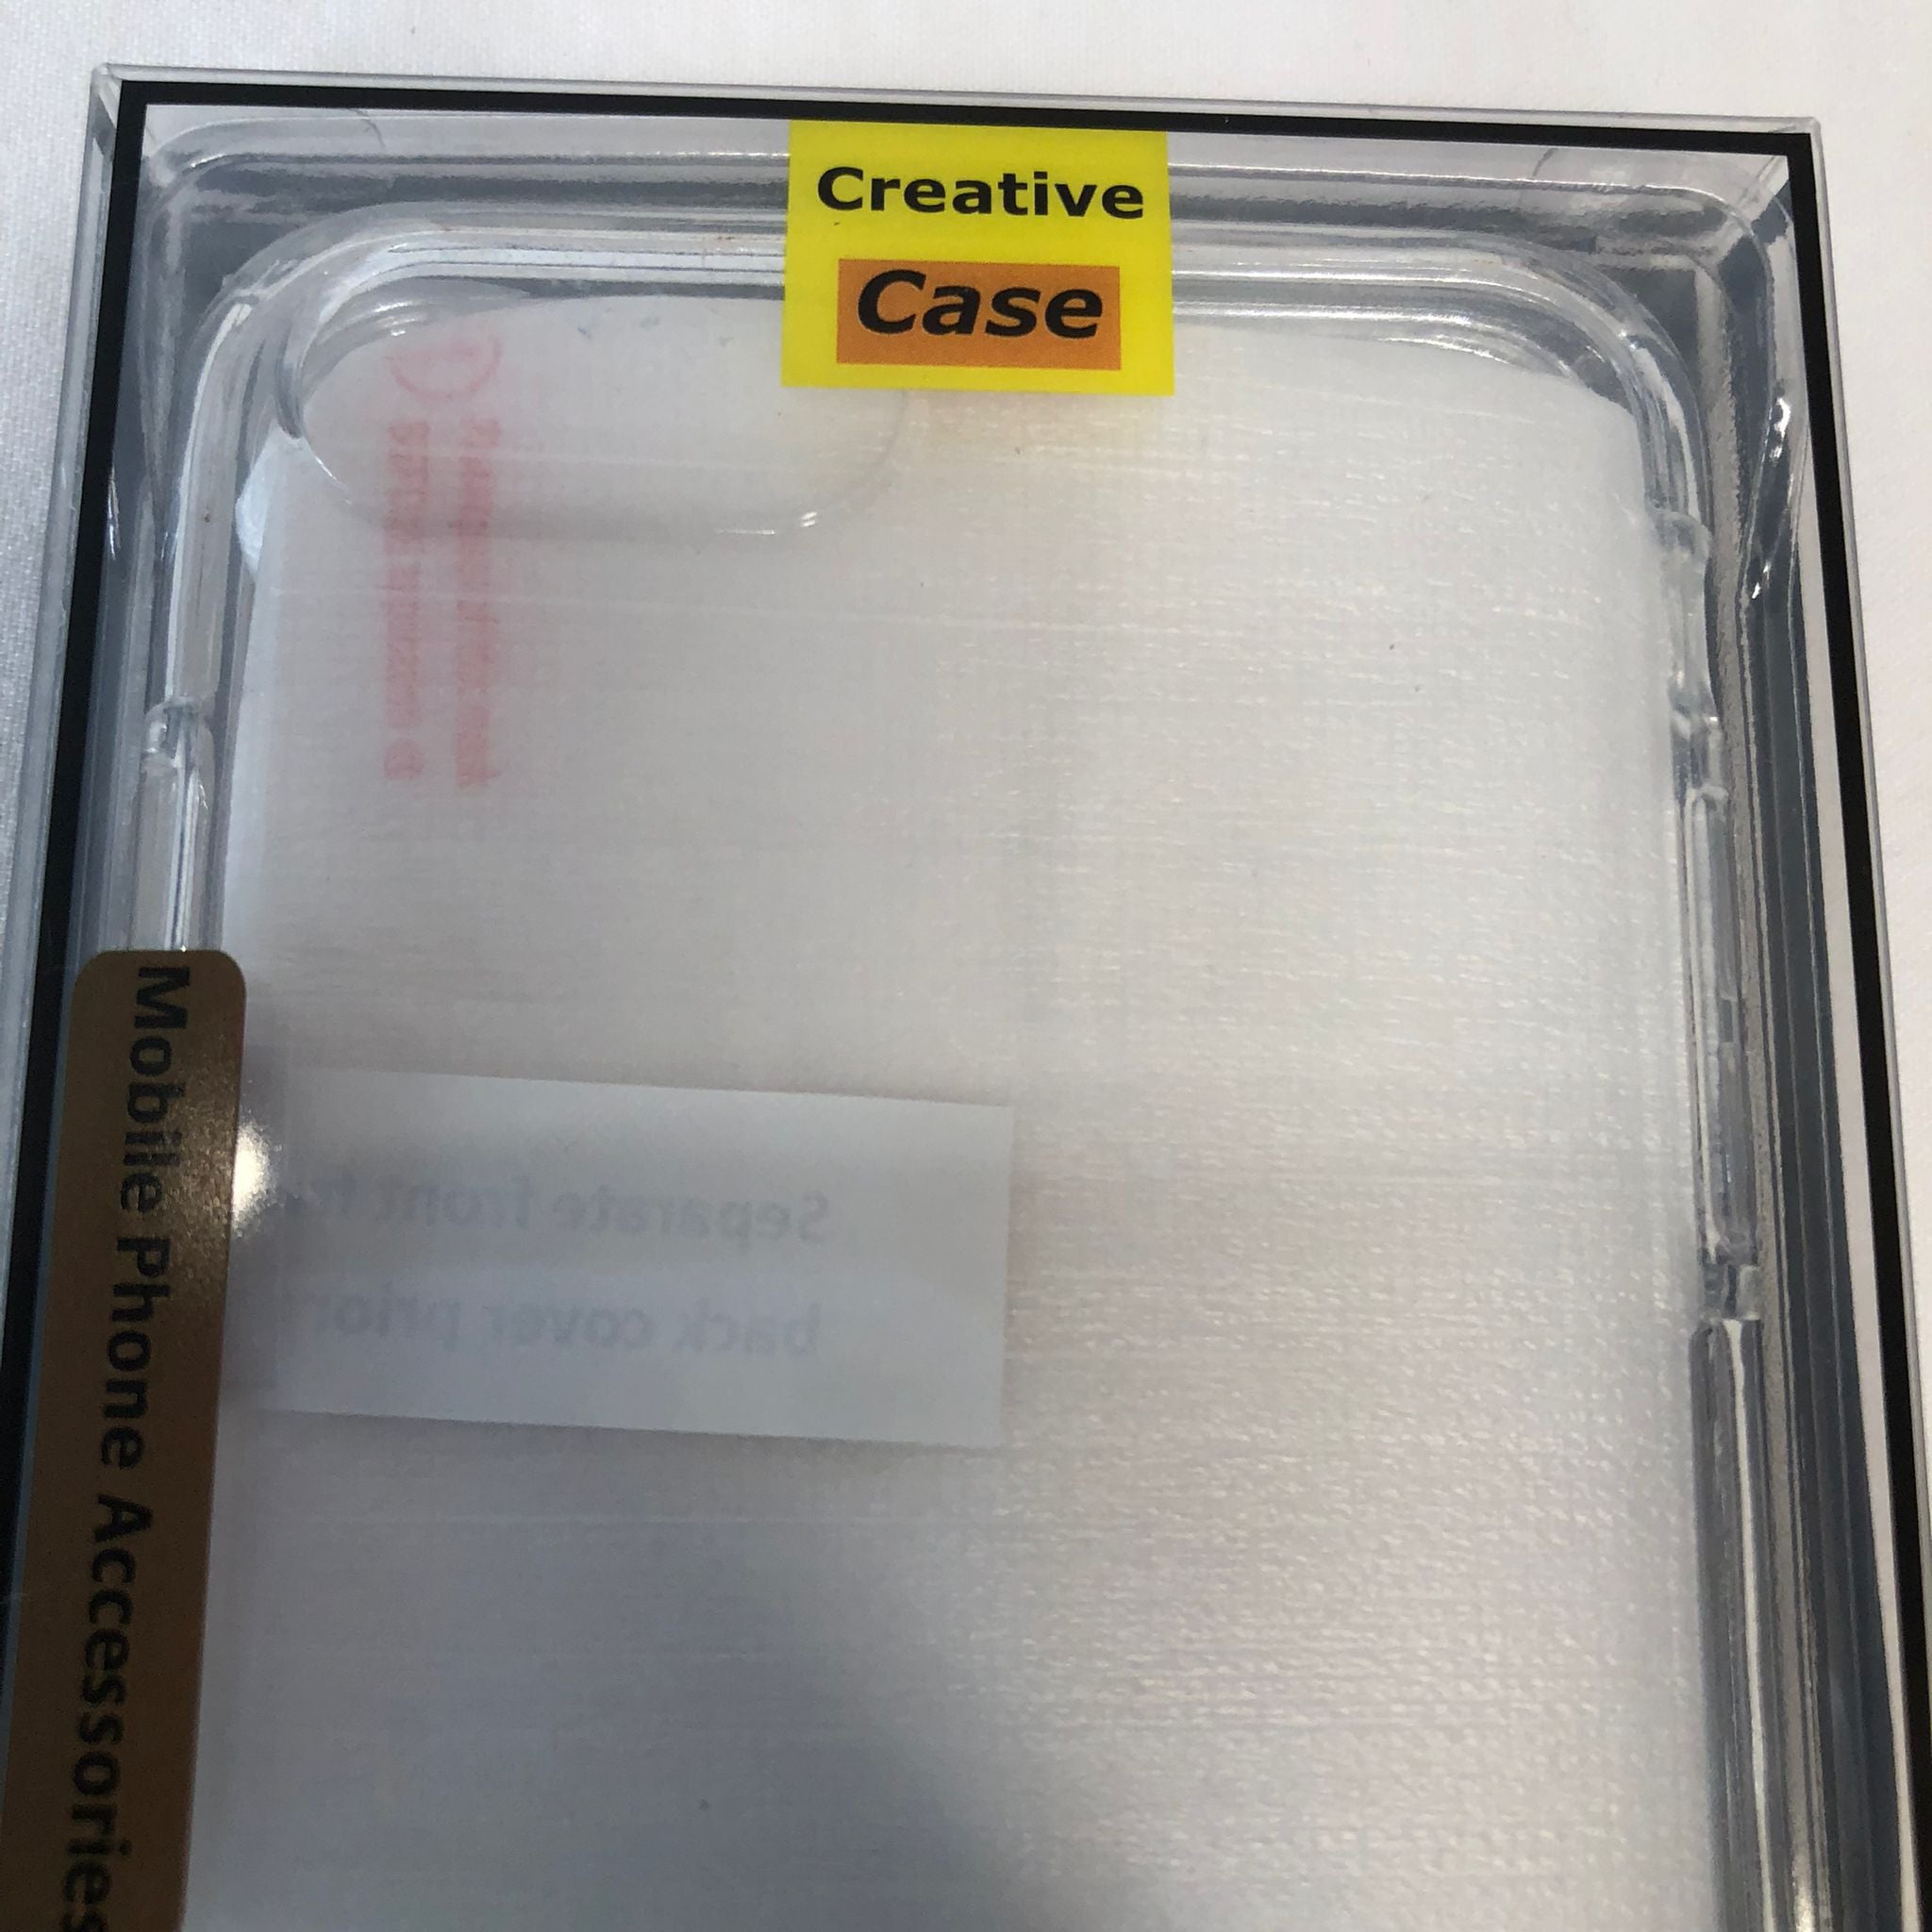 Iphone IP 8 case 5.5 inch Soft Transparent TPU Case Cover